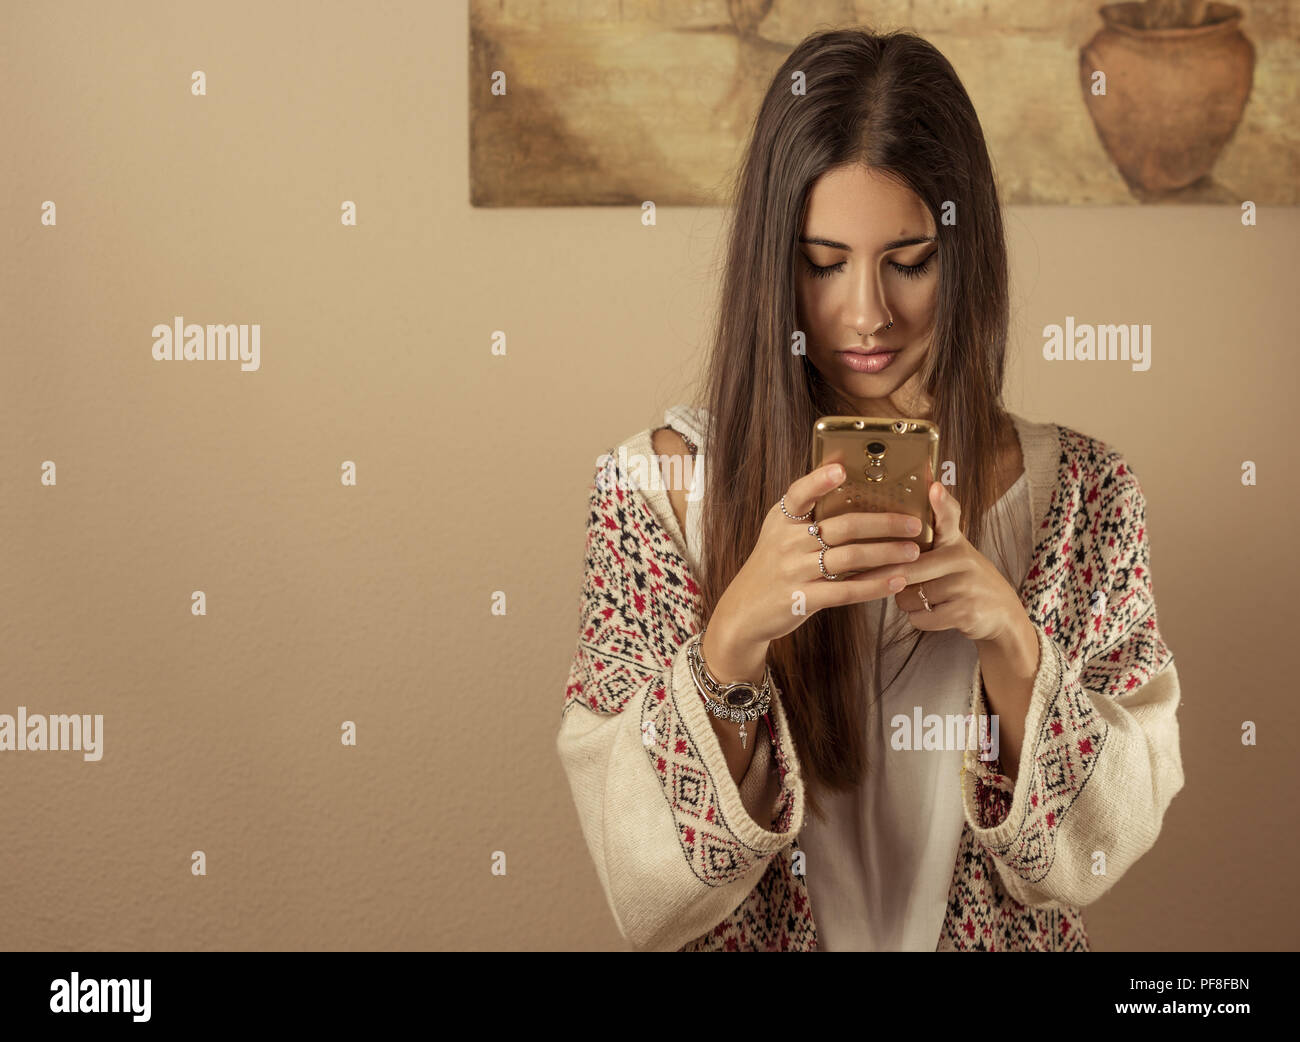 Hübsches Mädchen stehen auf Ihrem Mobiltelefon konzentriert. Stockfoto